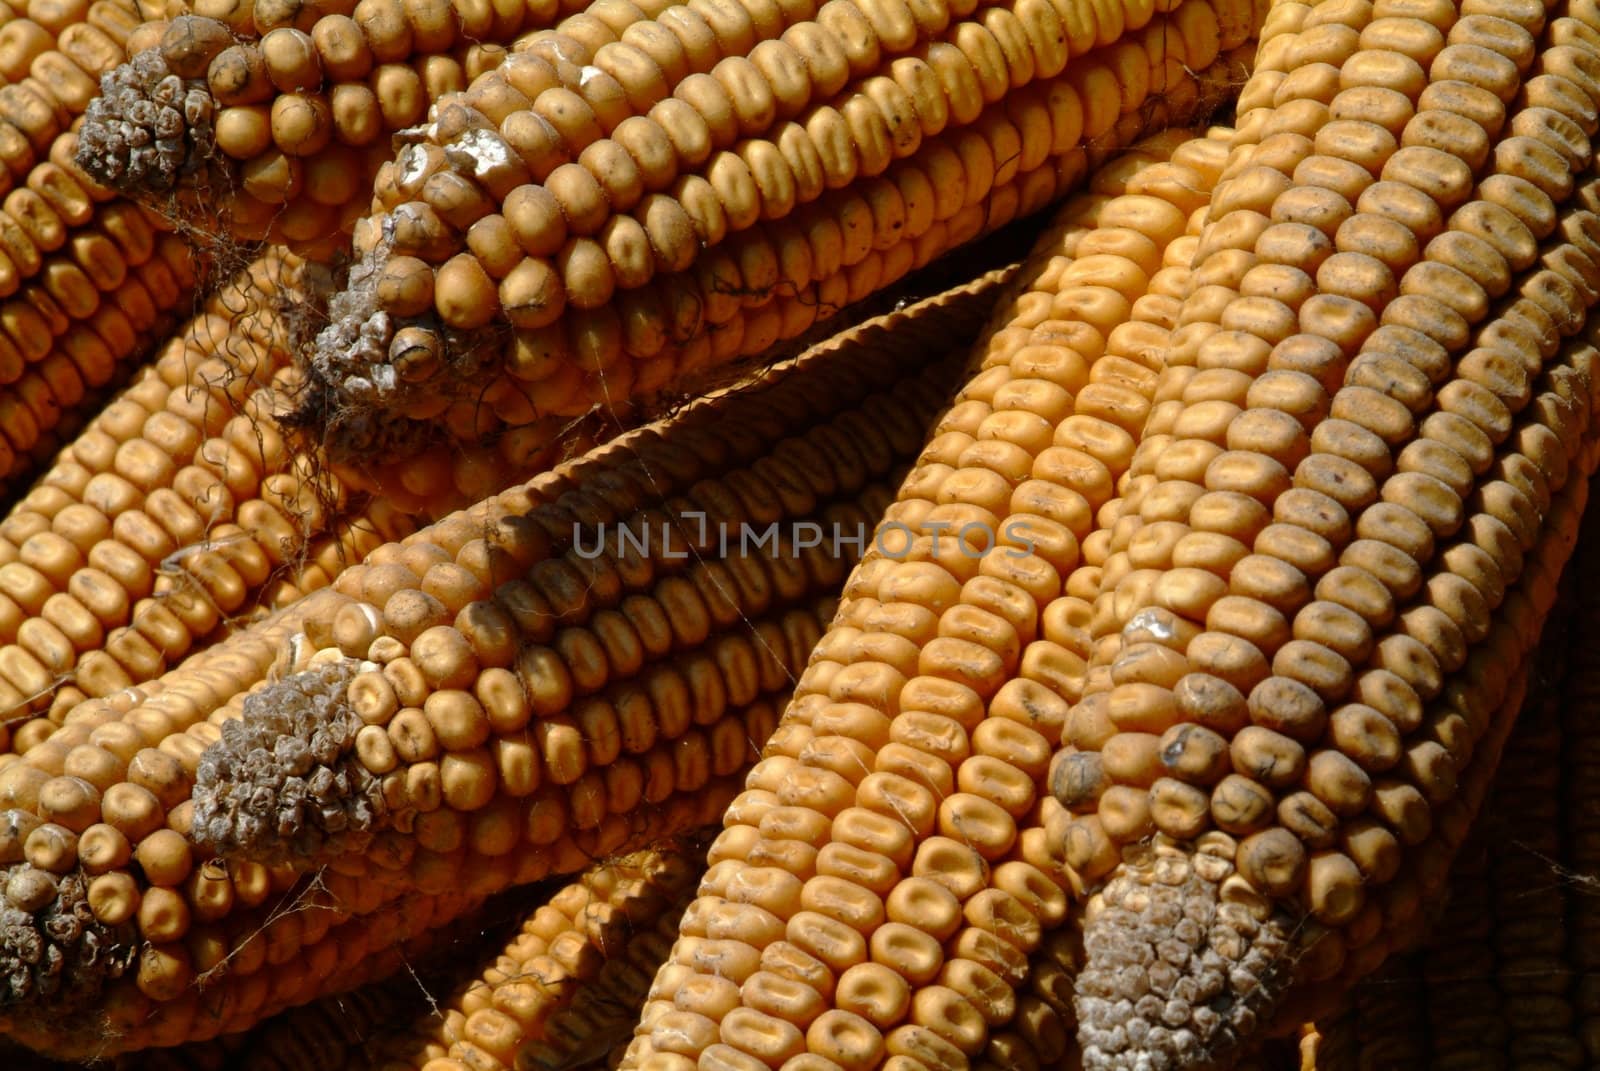 Maiskolben  | corncobs by fotofritz